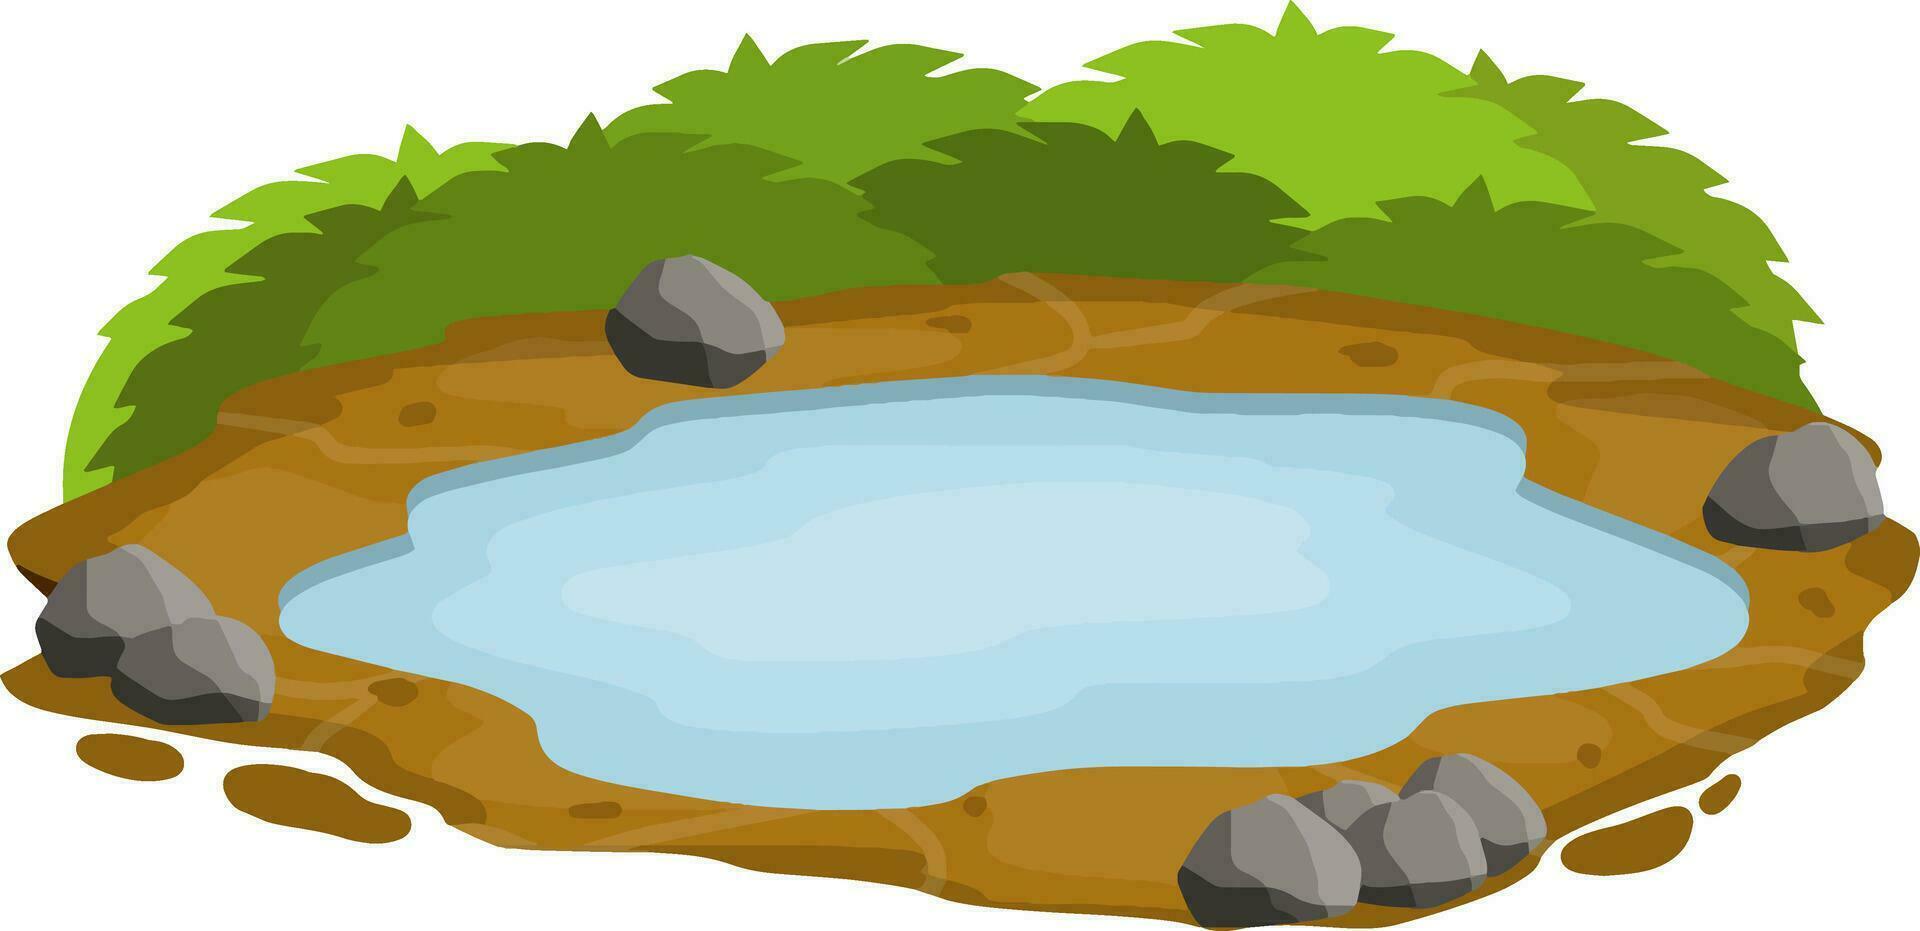 damm och träsk, sjö. platt tecknad serie. bakgrund för illustration. landskap med gräs, stenar och buske. element av natur och skog och vatten. plattform och jord vektor